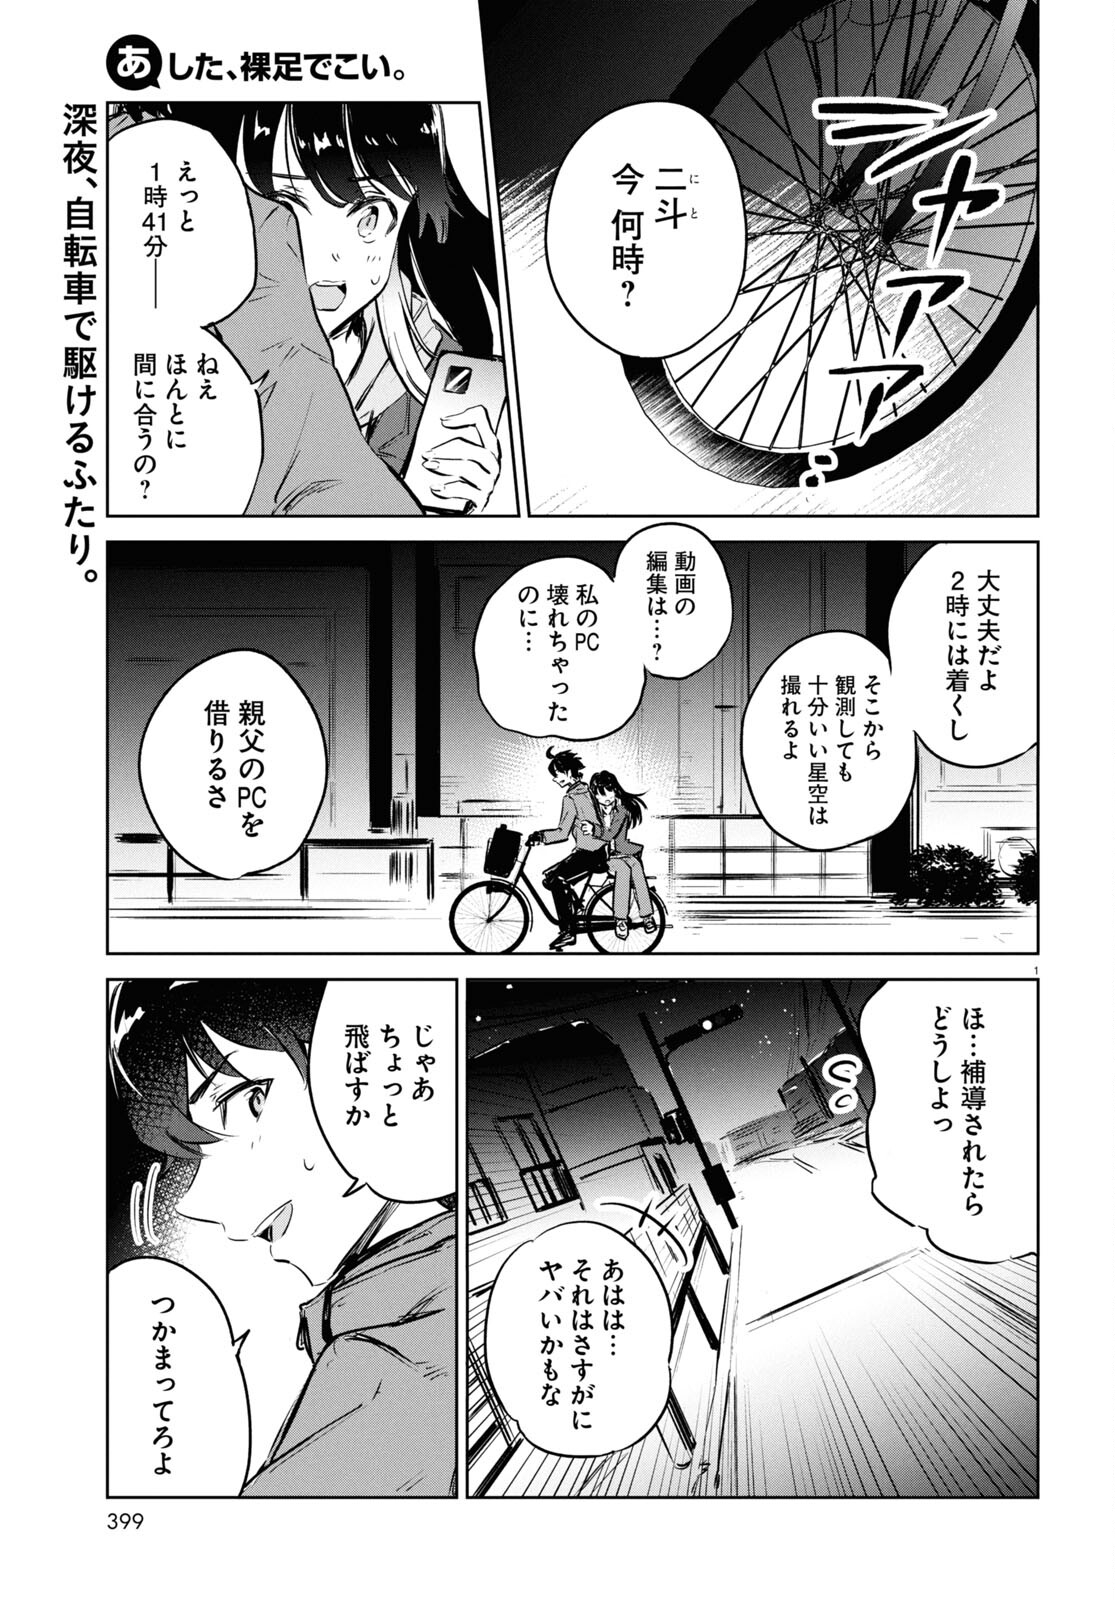 Ashita, Hadashi de Koi. - Chapter 8 - Page 1